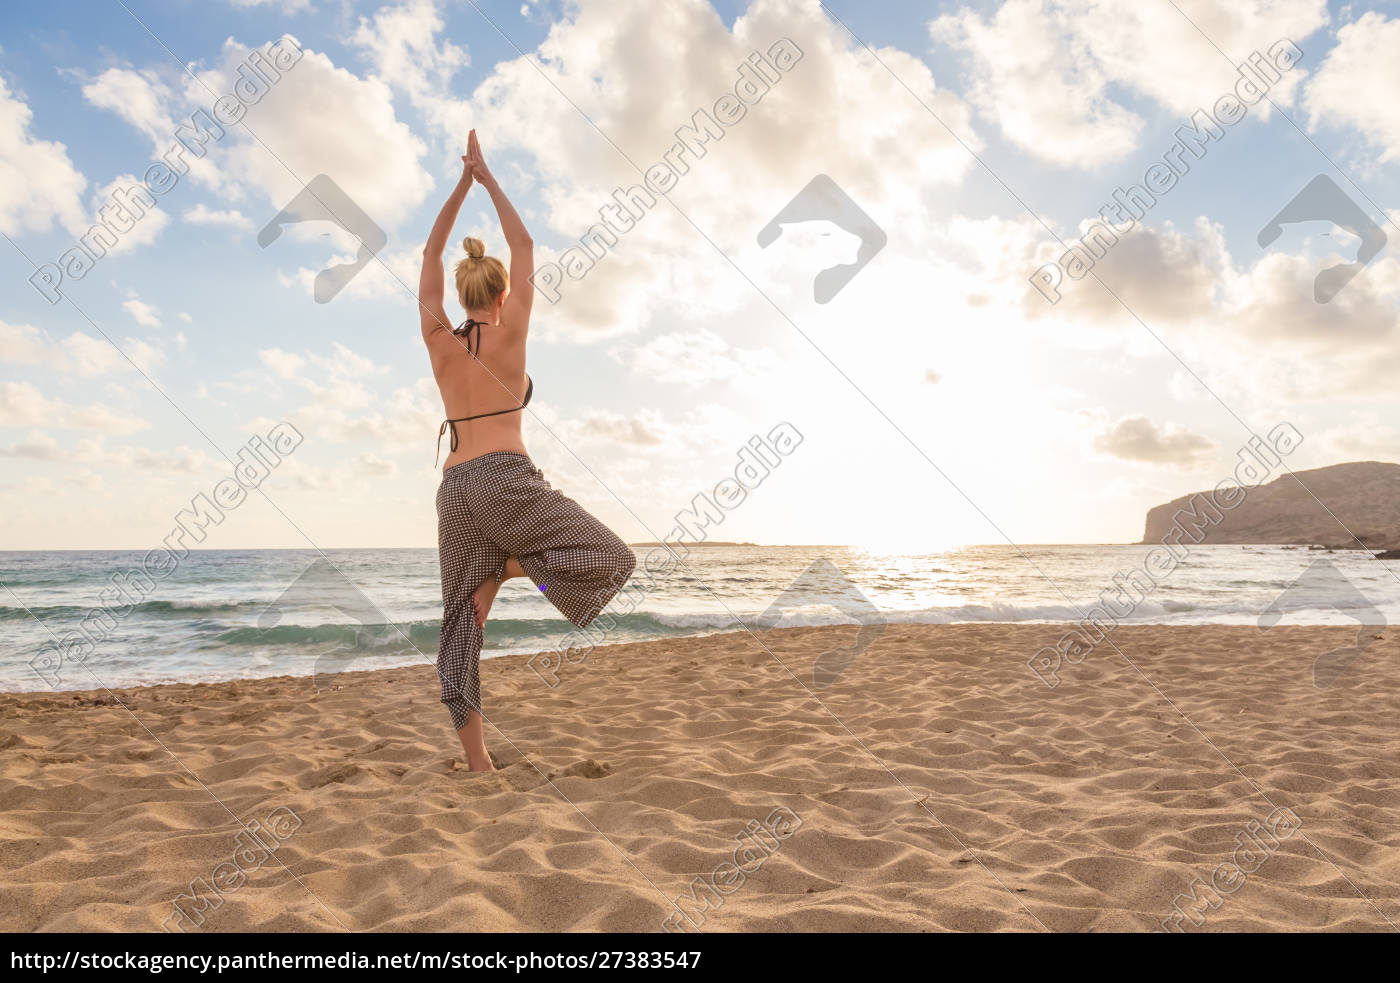 Mulher praticando yoga na praia do mar ao pôr do sol. - Stockphoto  #27383547